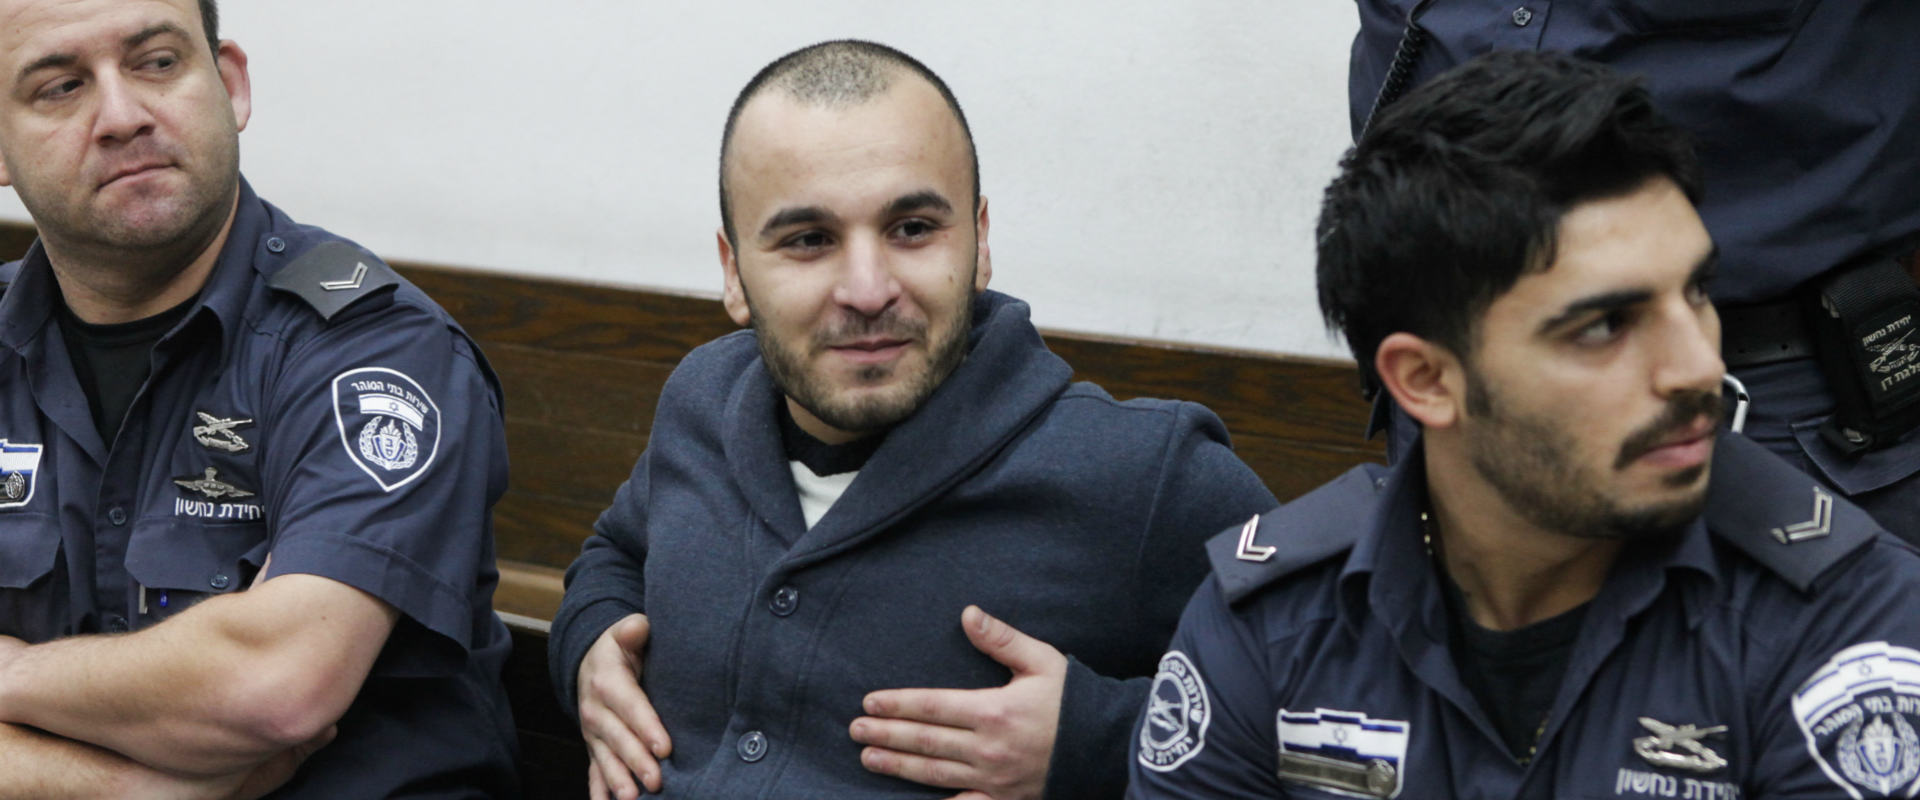 זאור חנקישייב בהארכת מעצרו. פברואר 2014